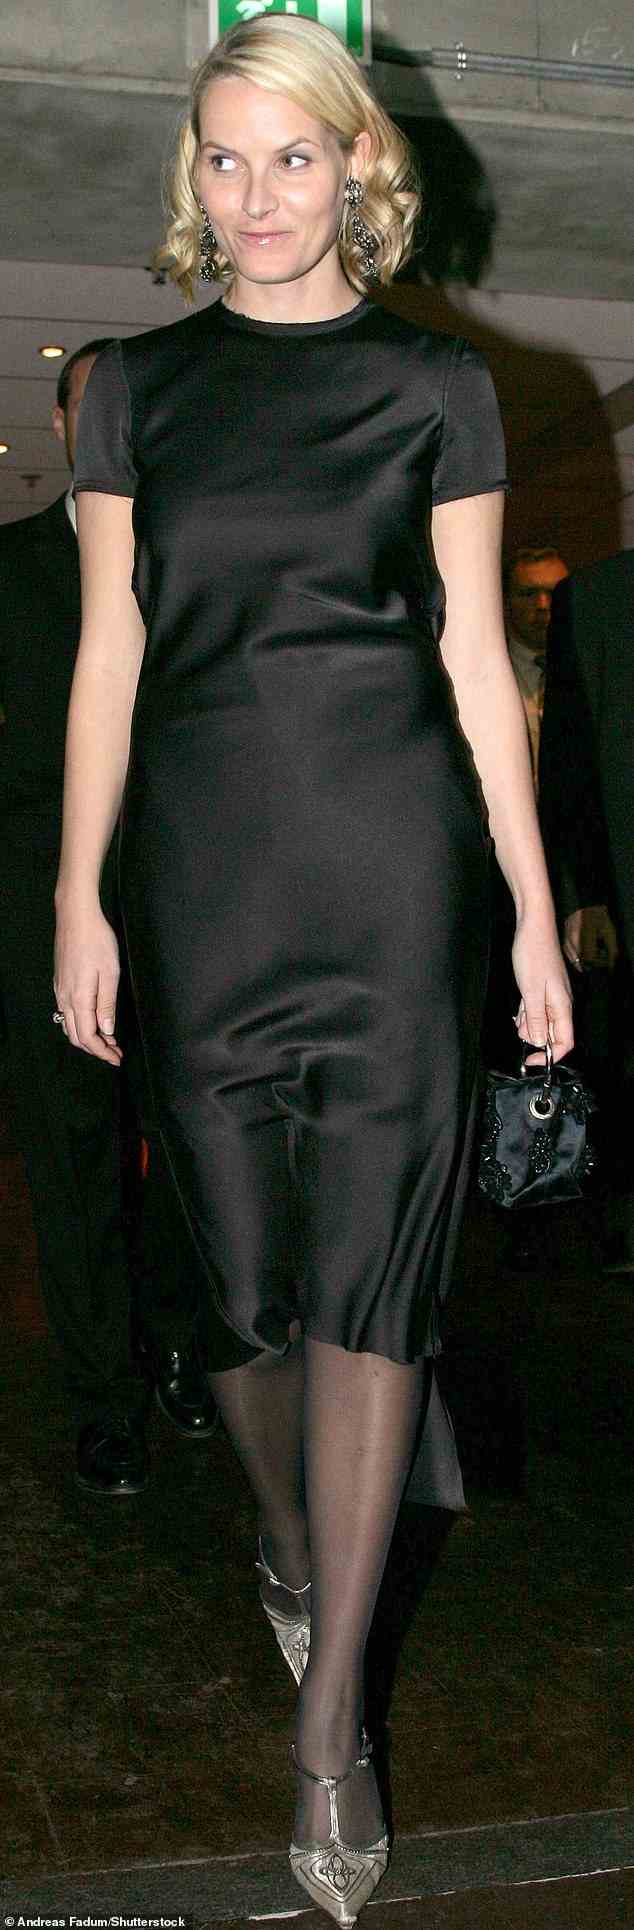 Kronprinzessin Mette-Marit wurde 2004 beim Nobelkonzert im selben schwarzen Lanvin-Kleid wie ihre Tochter abgebildet